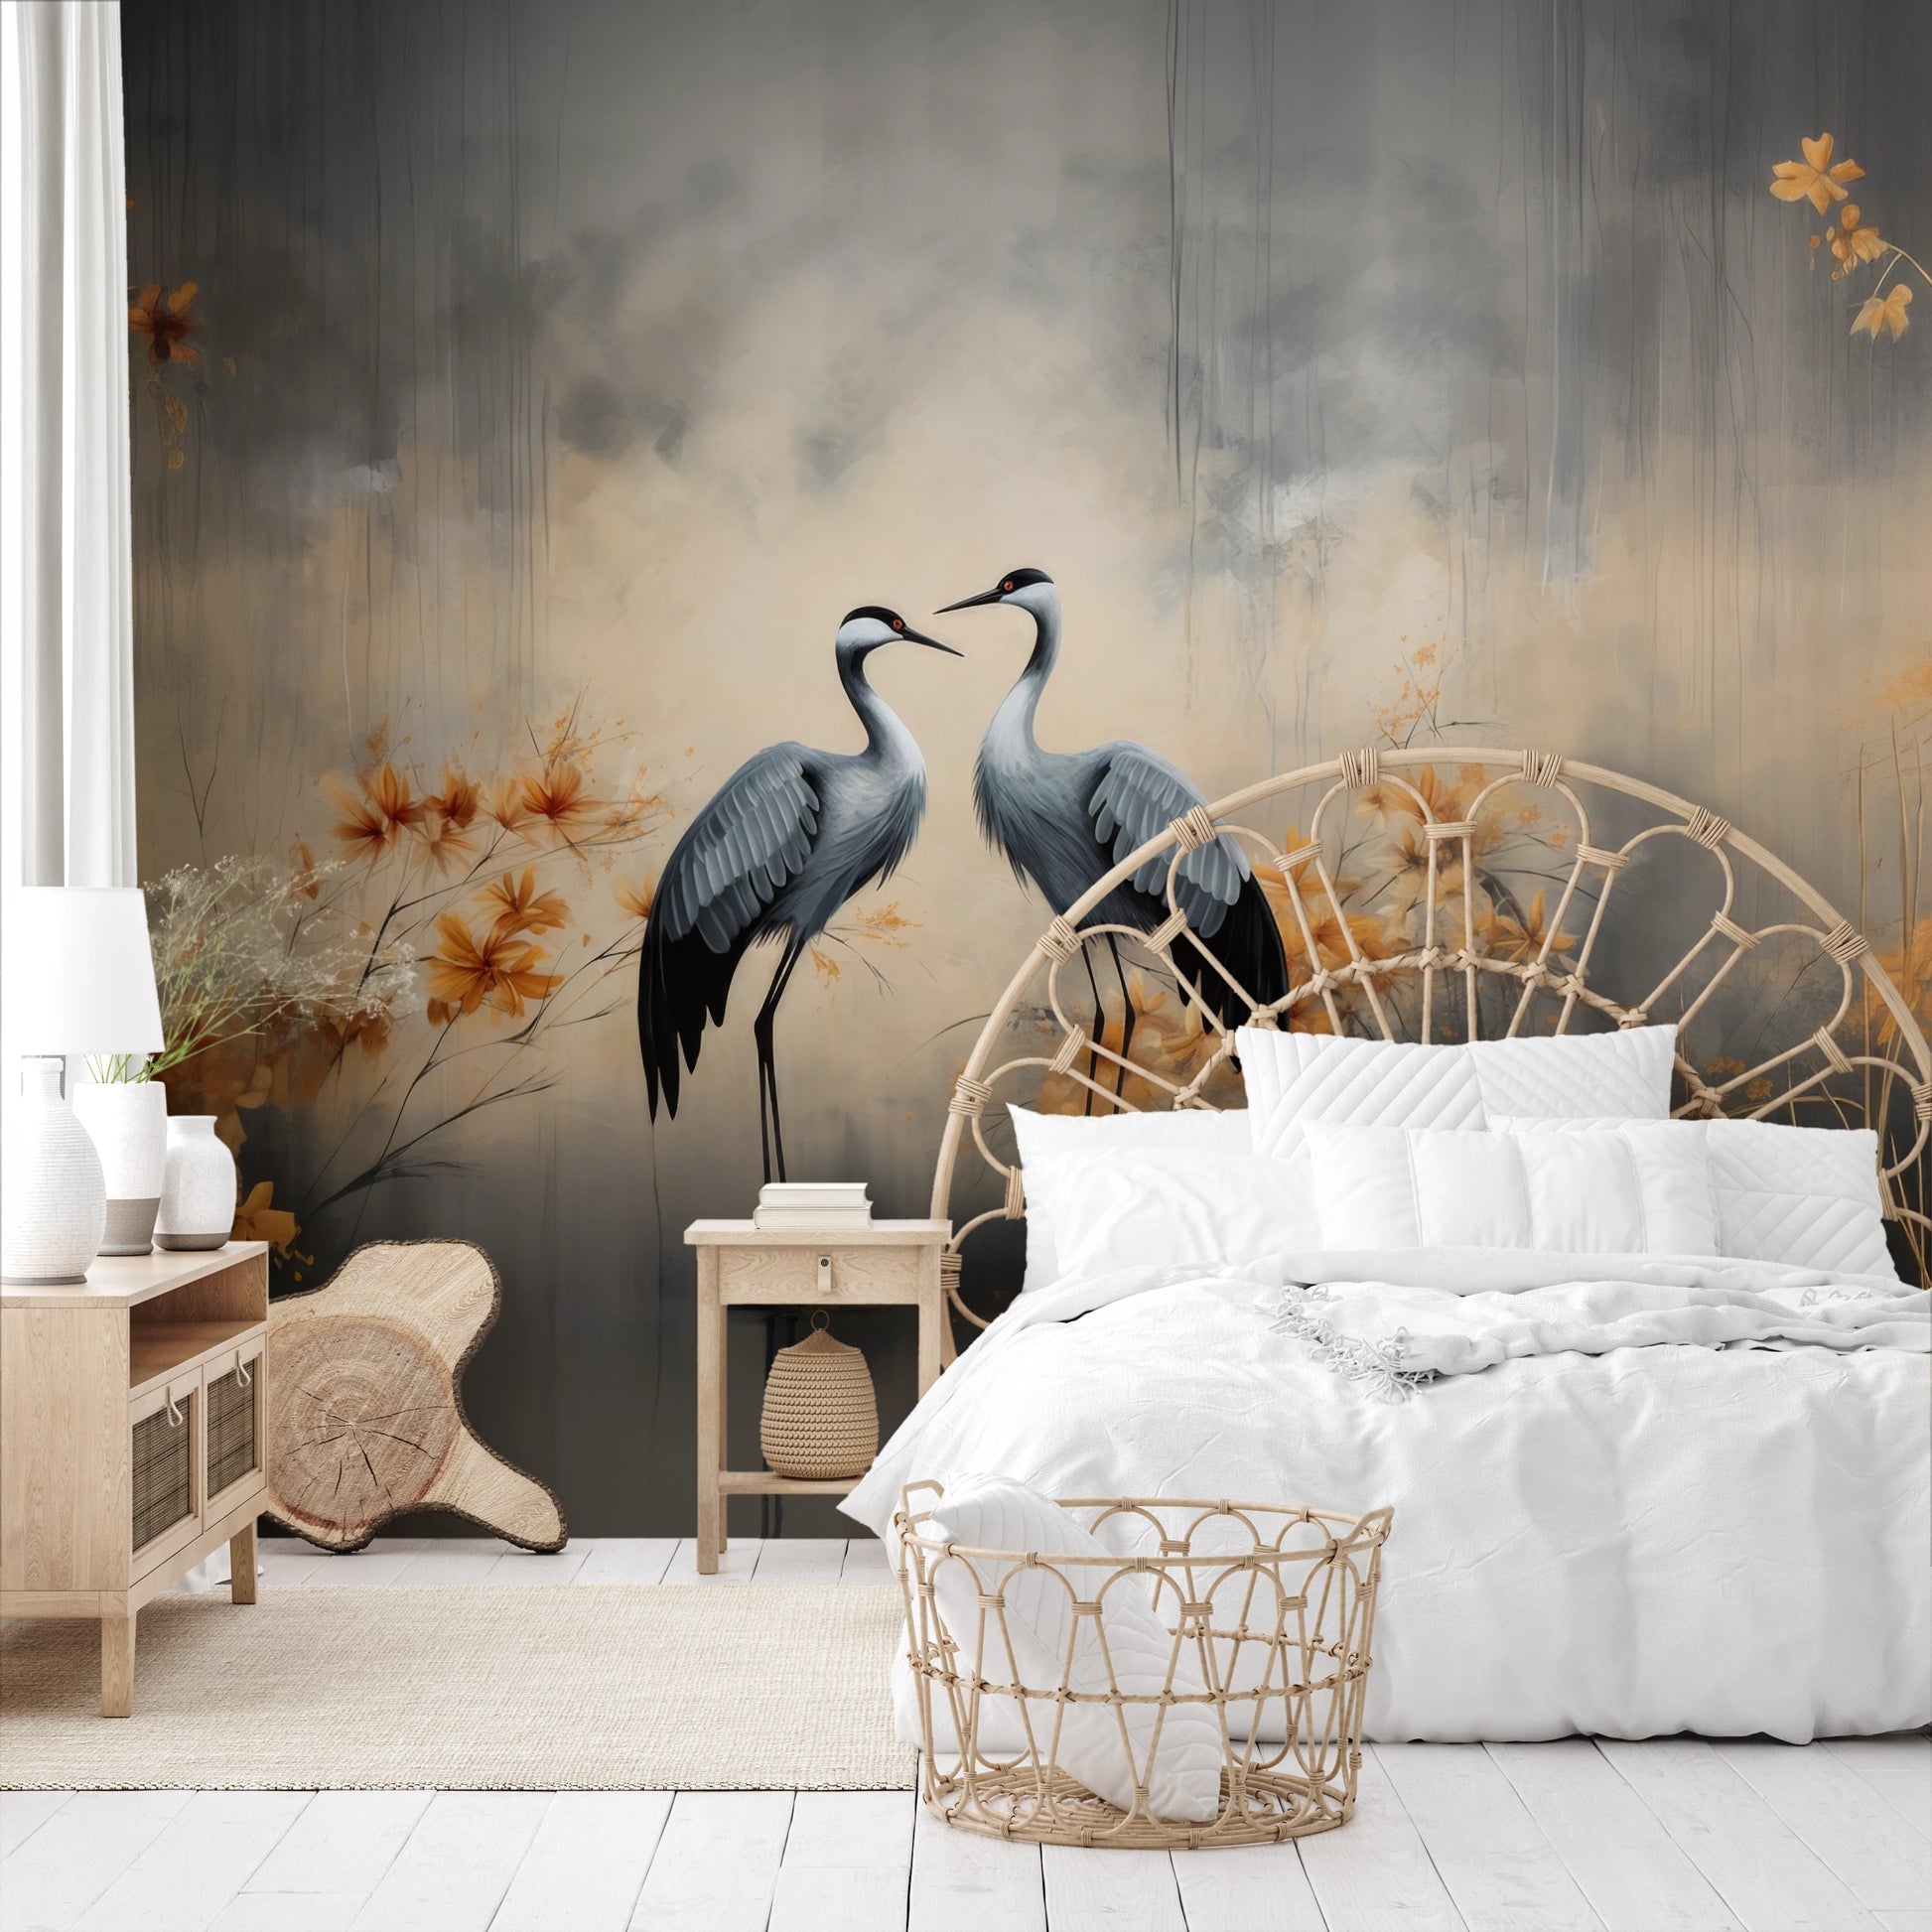 Fototapeta malowana o nazwie Autumn's Whisper pokazana w aranżacji wnętrza.